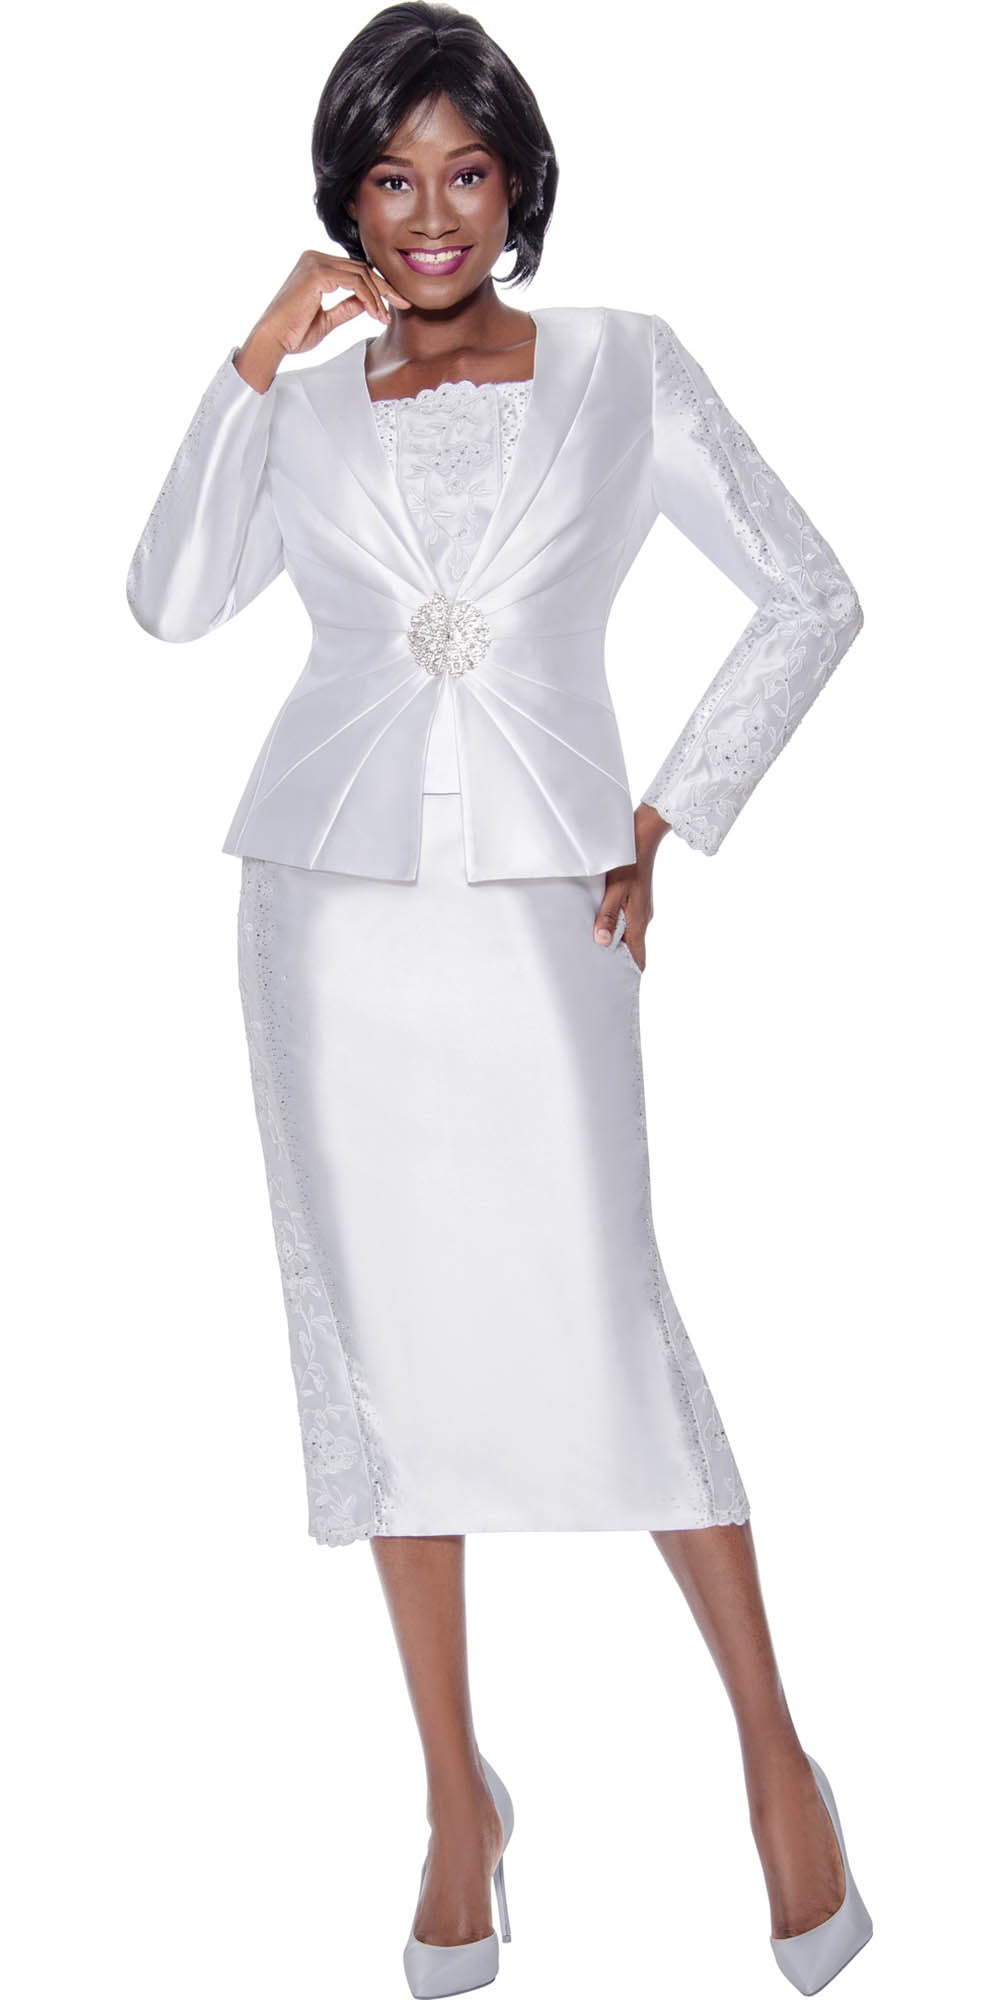 Terramina 7145 - White - 3PC Embellished Skirt Suit